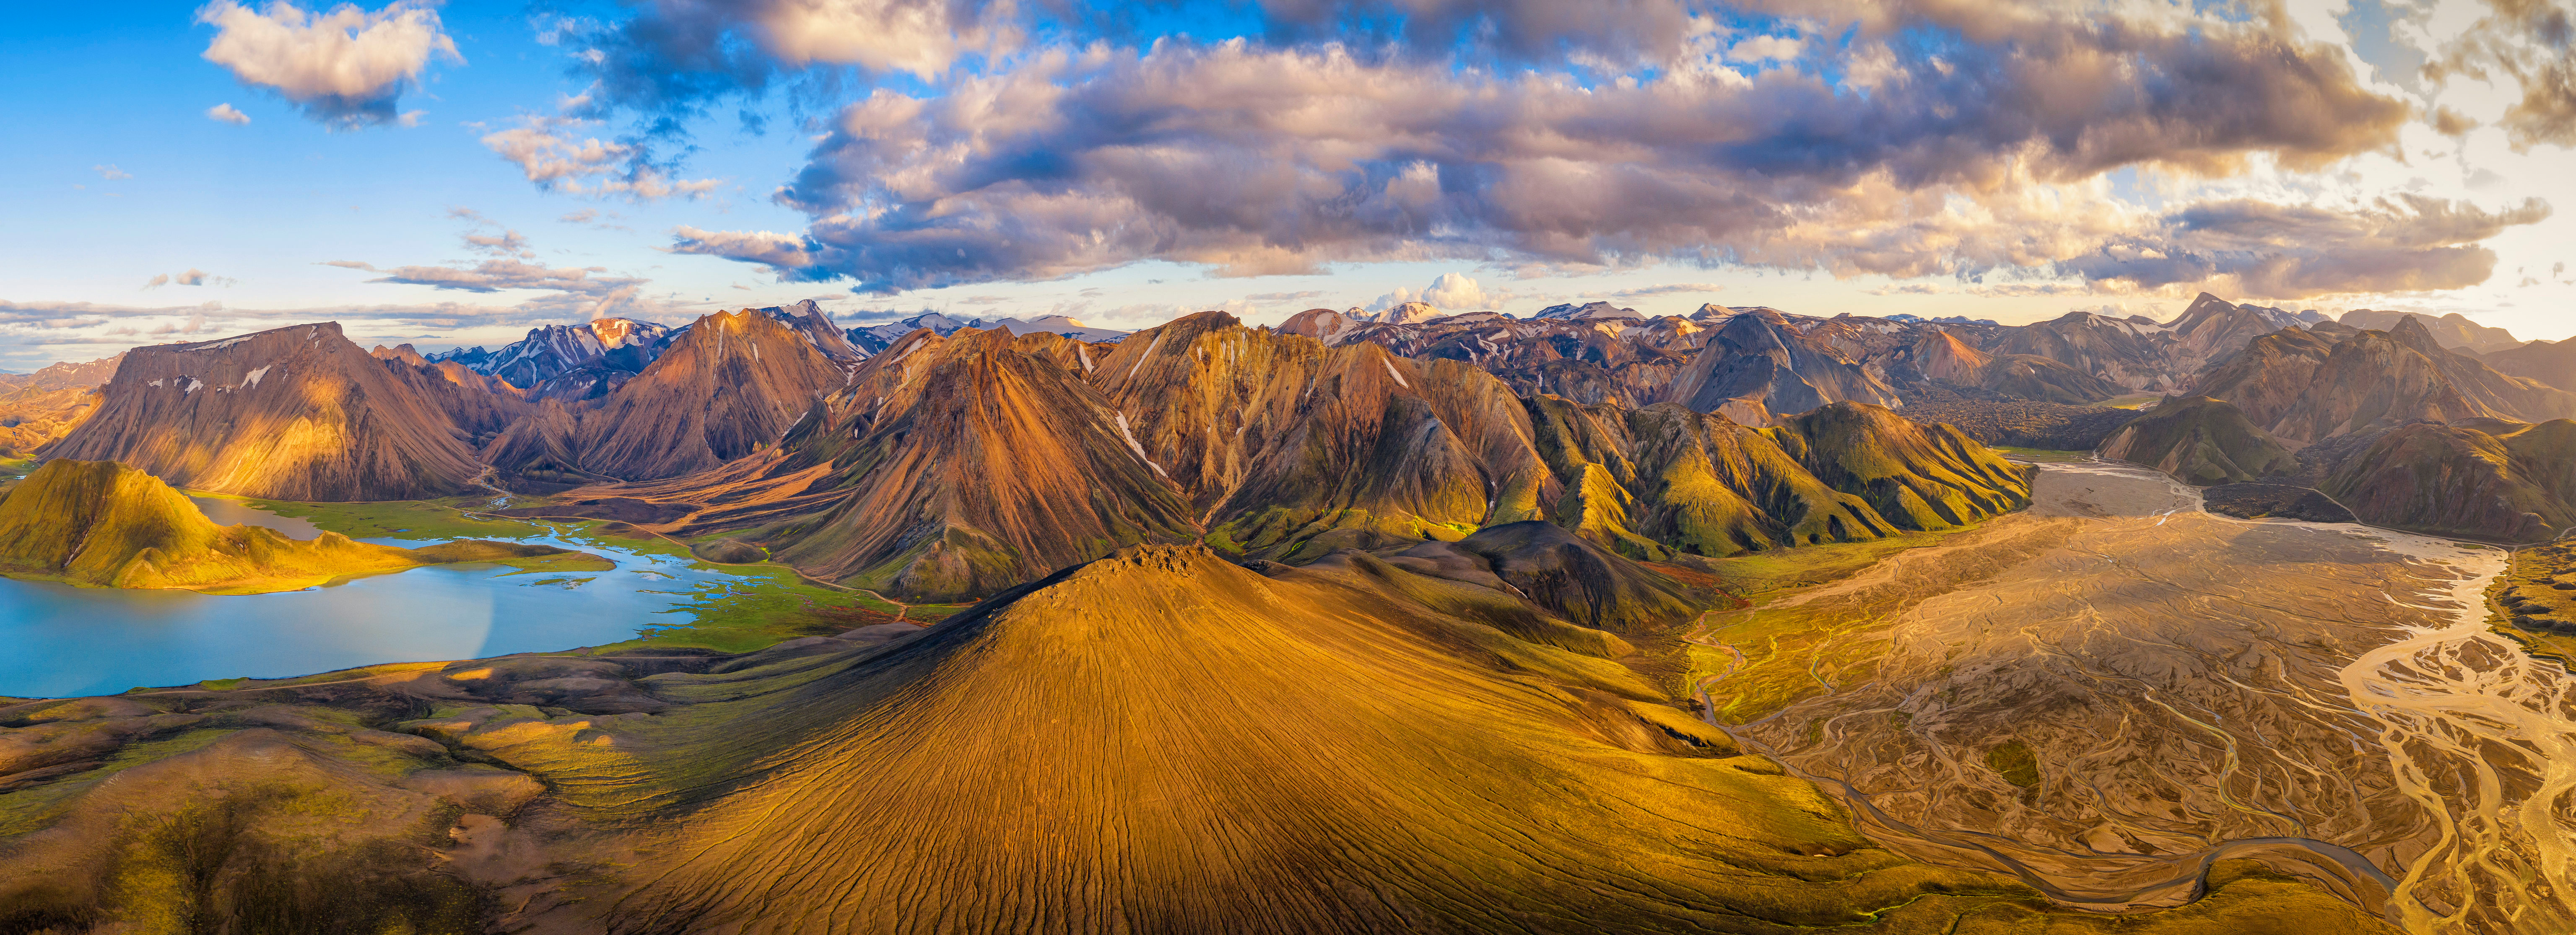 Обои для рабочего стола Исландия Панорама гора Природа Пейзаж Облака 6144x2231 панорамная Горы облако облачно